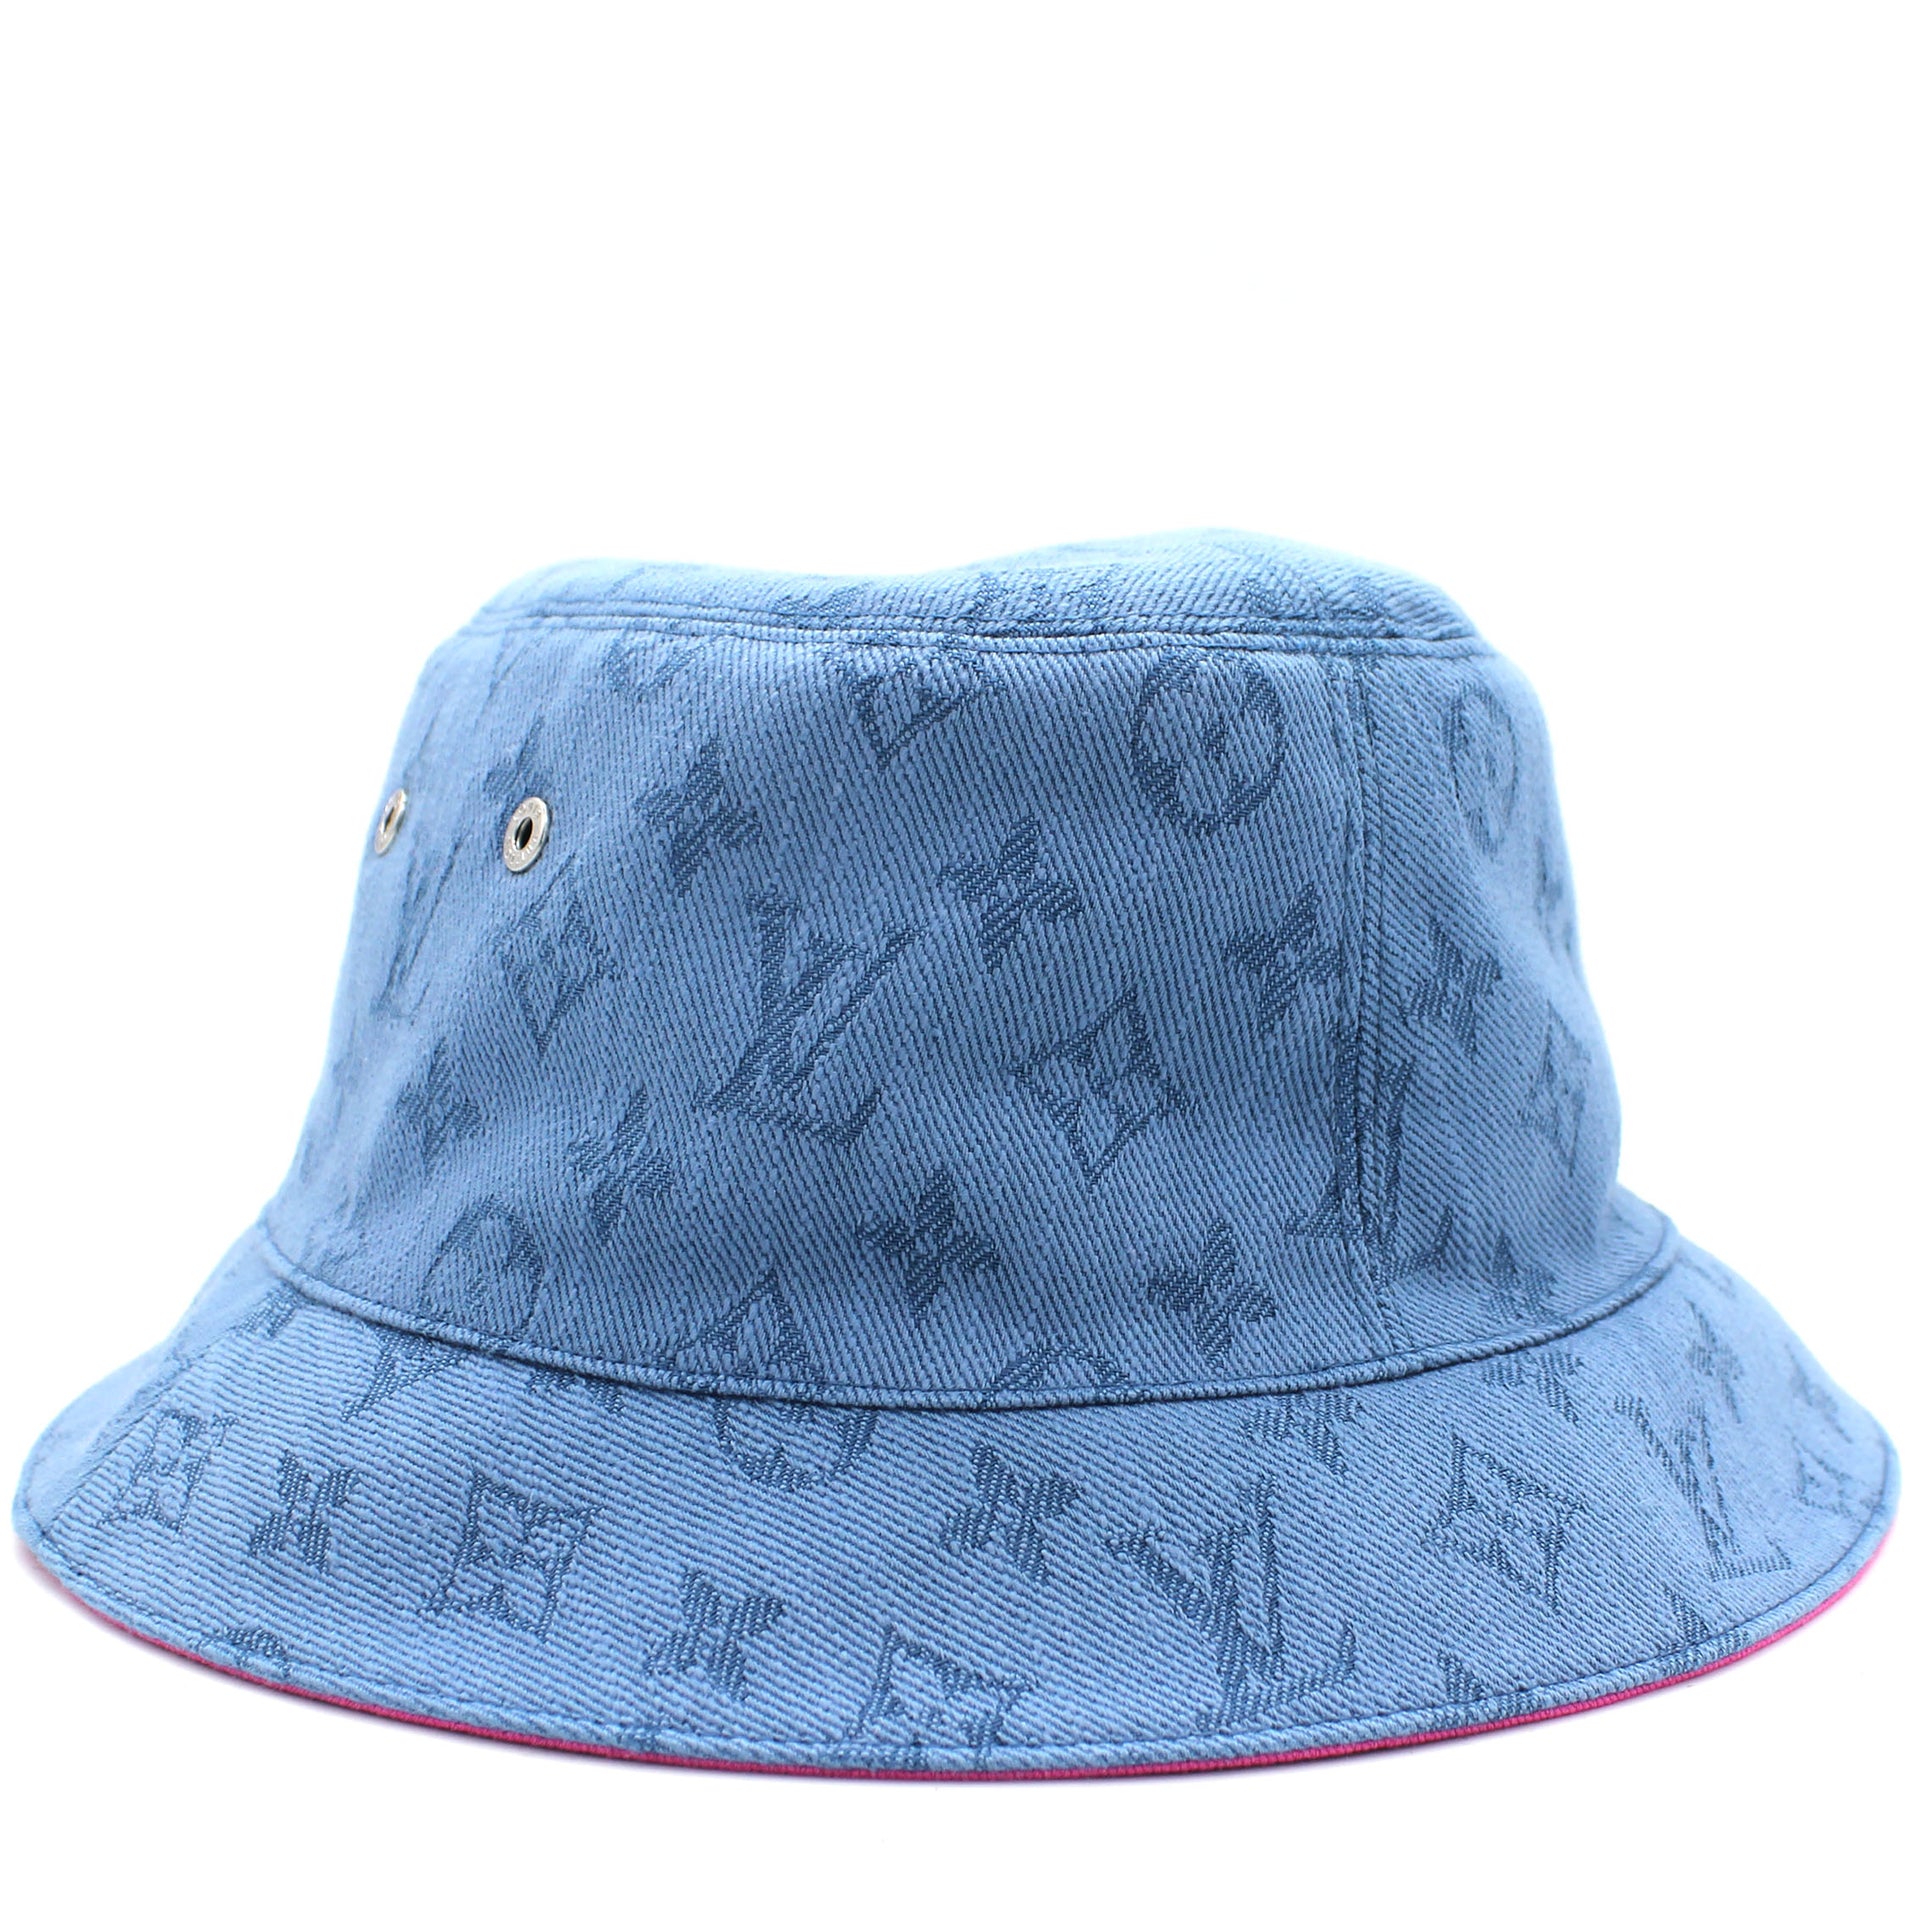 Louis Vuitton - Monogram Essential Bucket Hat - Cotton - Blue - Size: 58 - Luxury